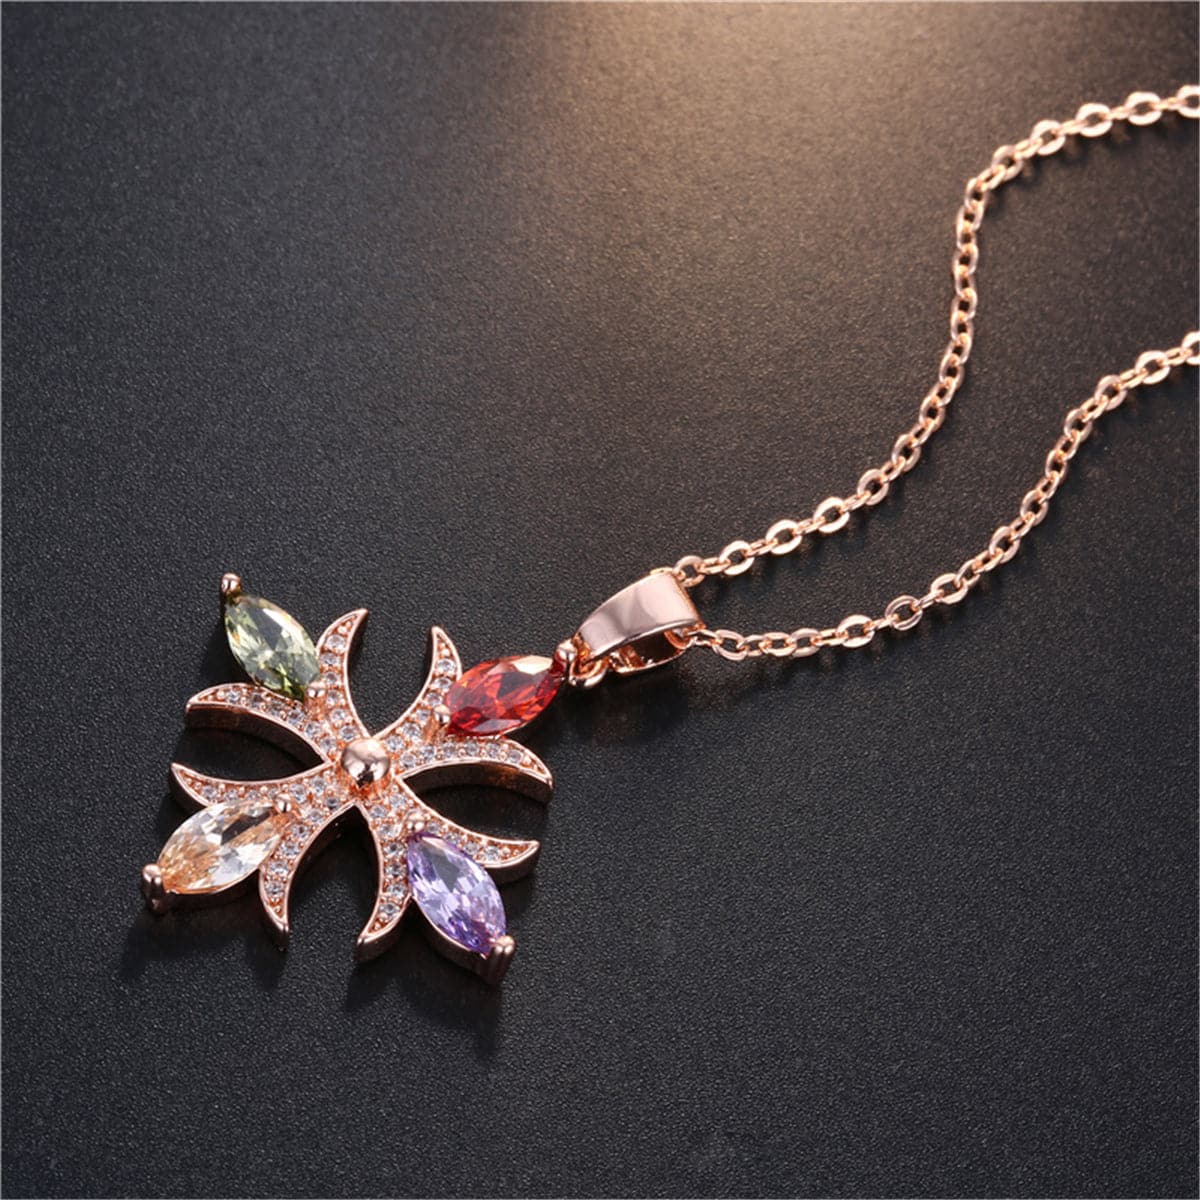 Multicolor Crystal & Cubic Zirconia Botany Cross Pendant Necklace